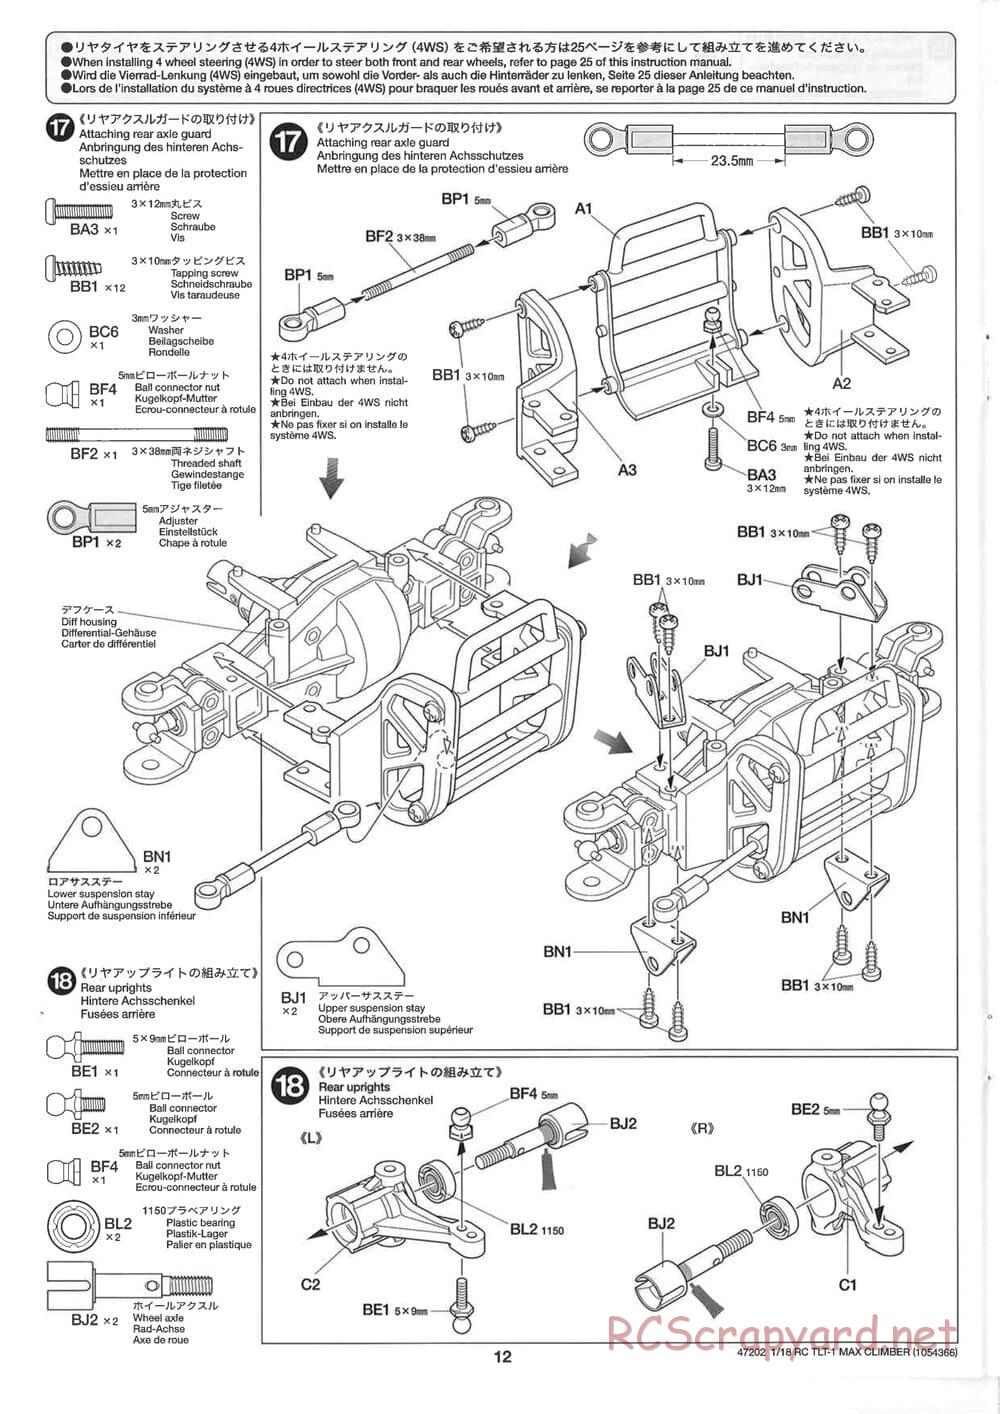 Tamiya - Max Climber - TLT-1 Chassis - Manual - Page 12